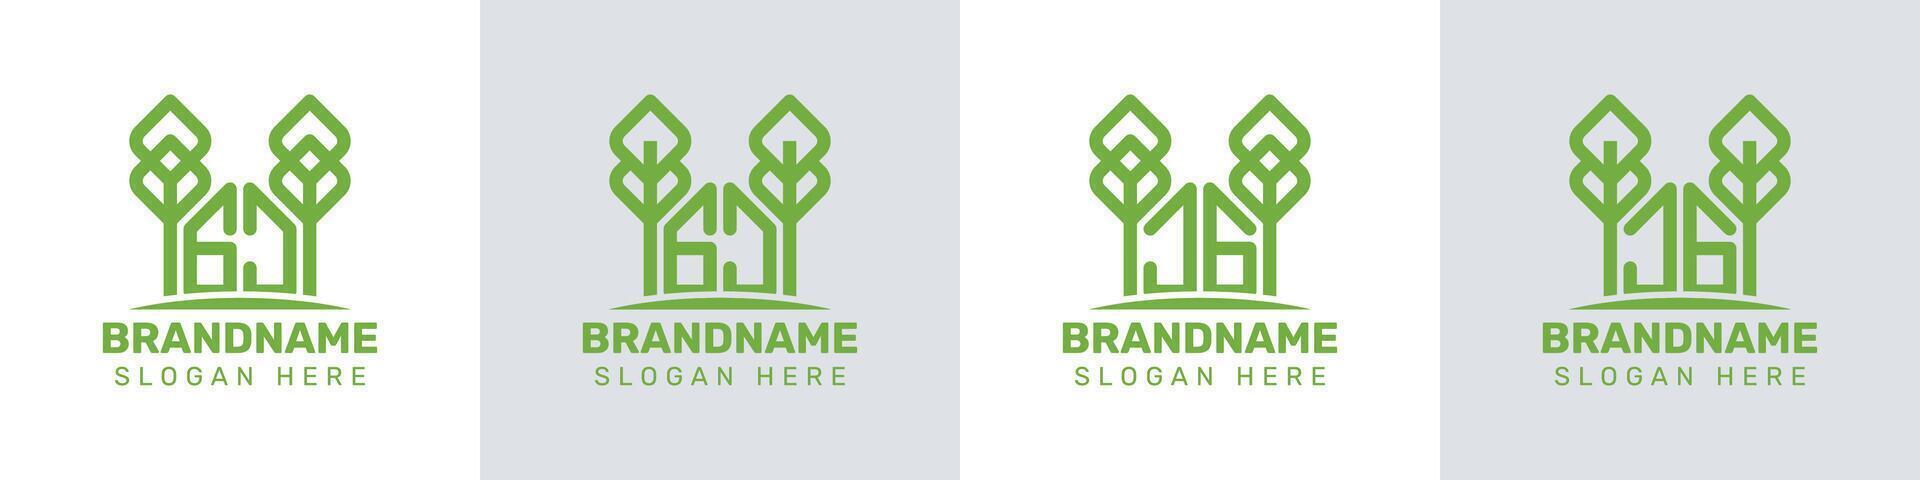 cartas gj e jg estufa logotipo, para o negócio relacionado para plantar com gj ou jg iniciais vetor